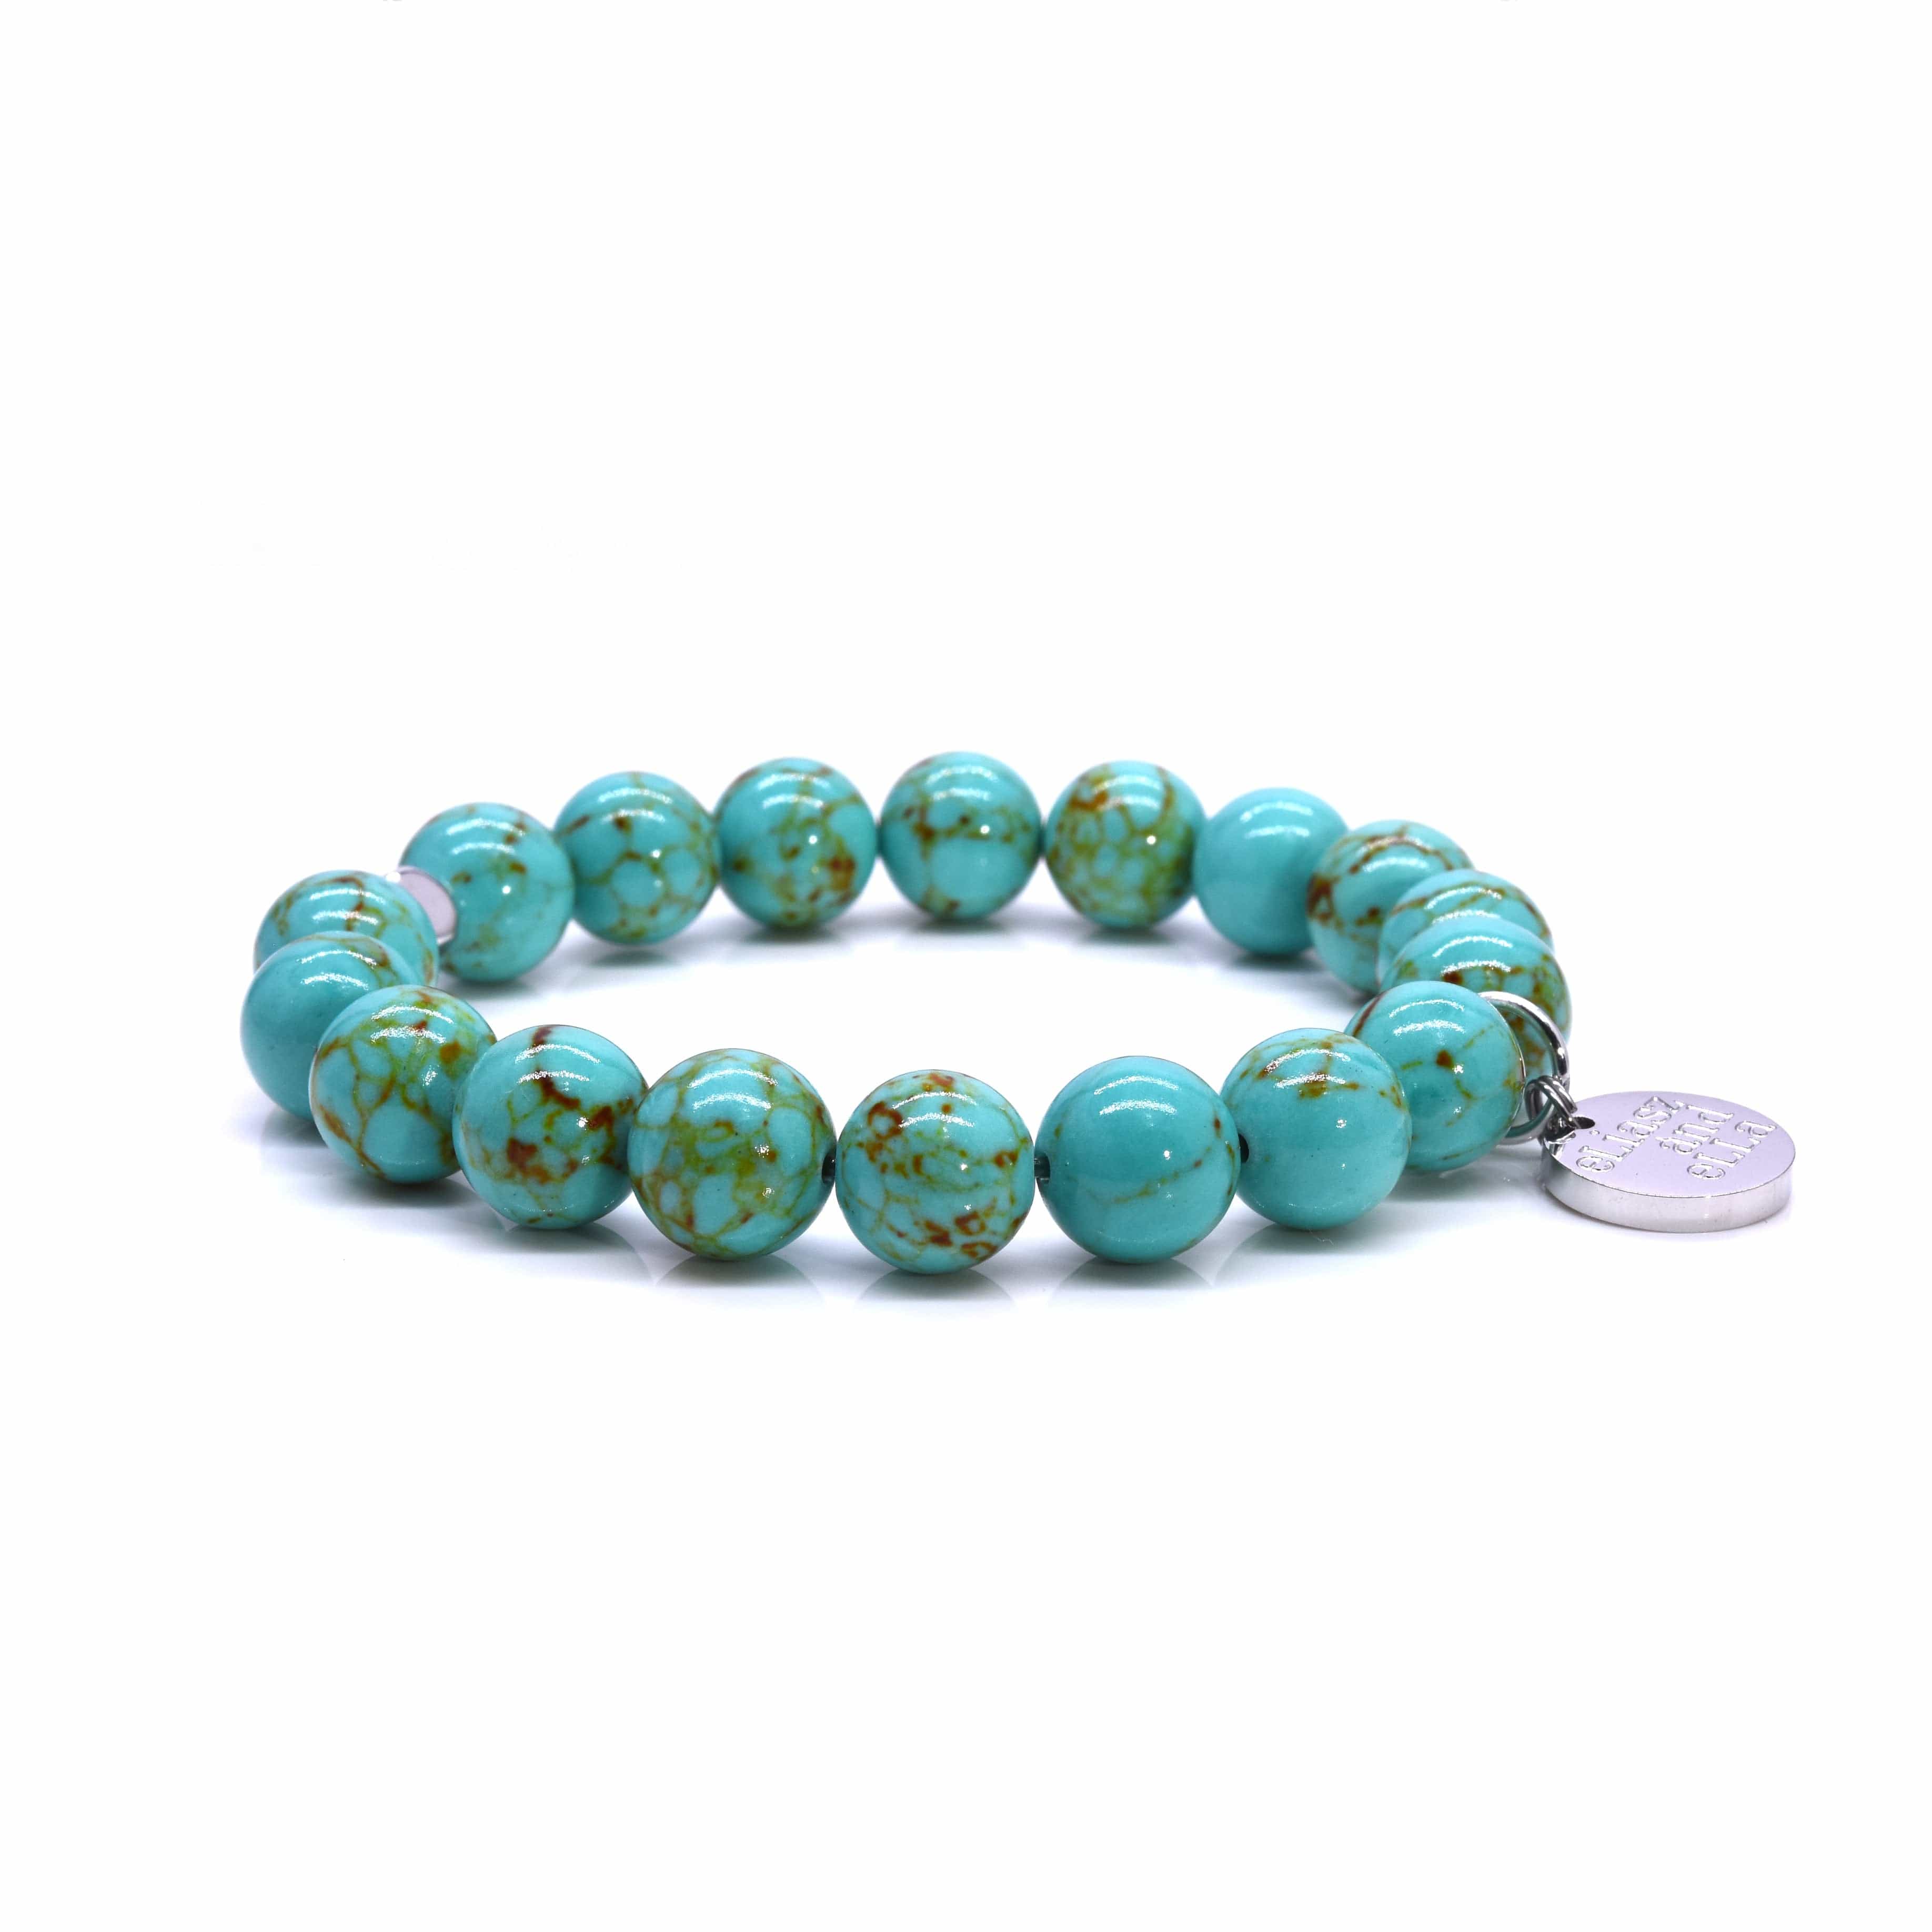 Turquoise and White Crystals Clay Beads Shamballa Bracelet - Ephori London  - Luxury custom natural stone beaded bracelets